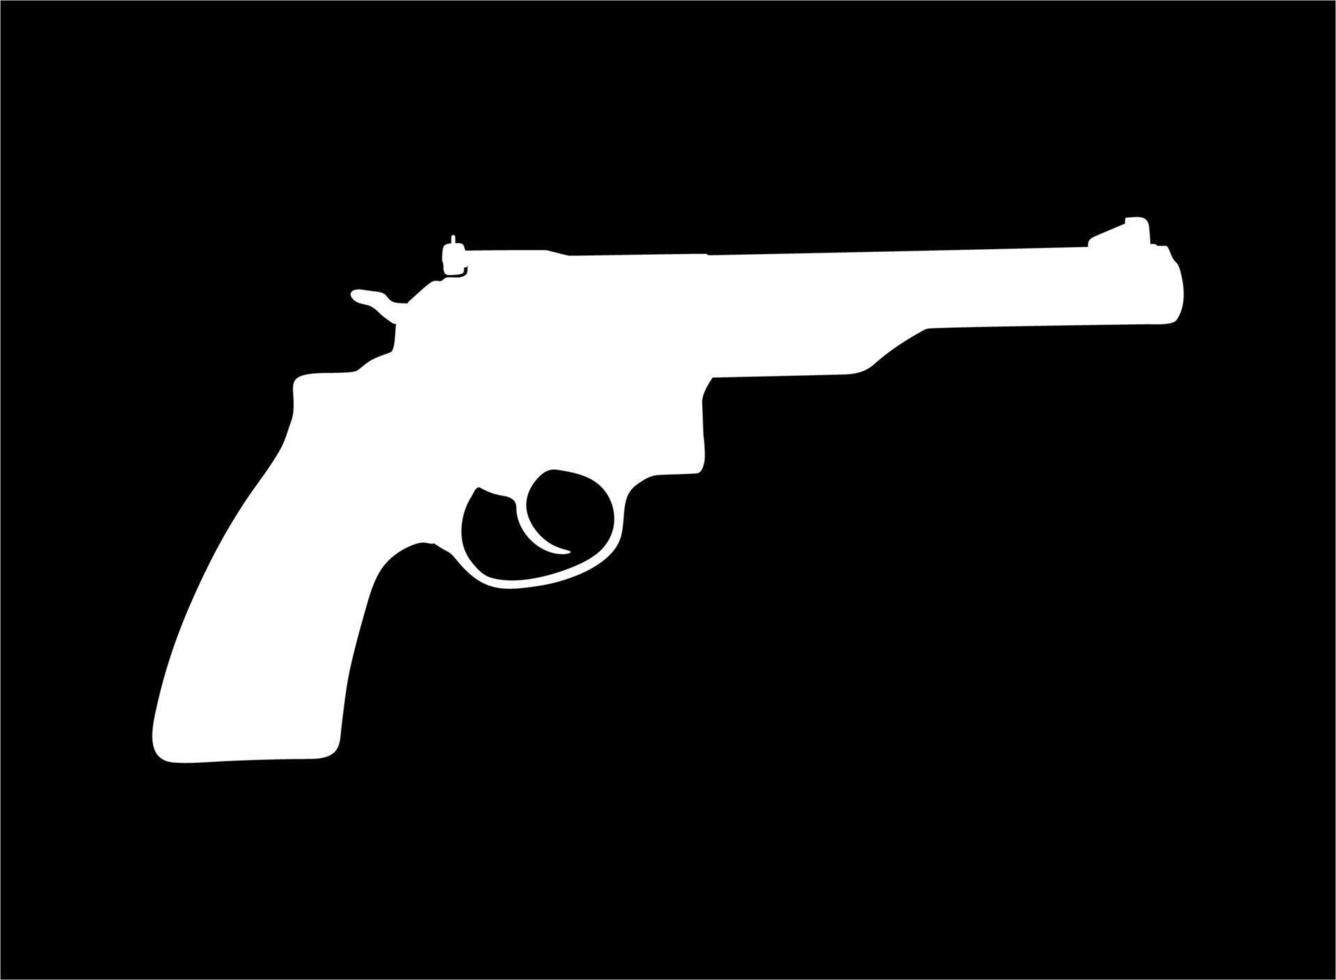 silhueta de arma, pistola em vackground preto para logotipo, pictograma, site ou elemento de design gráfico. ilustração vetorial vetor